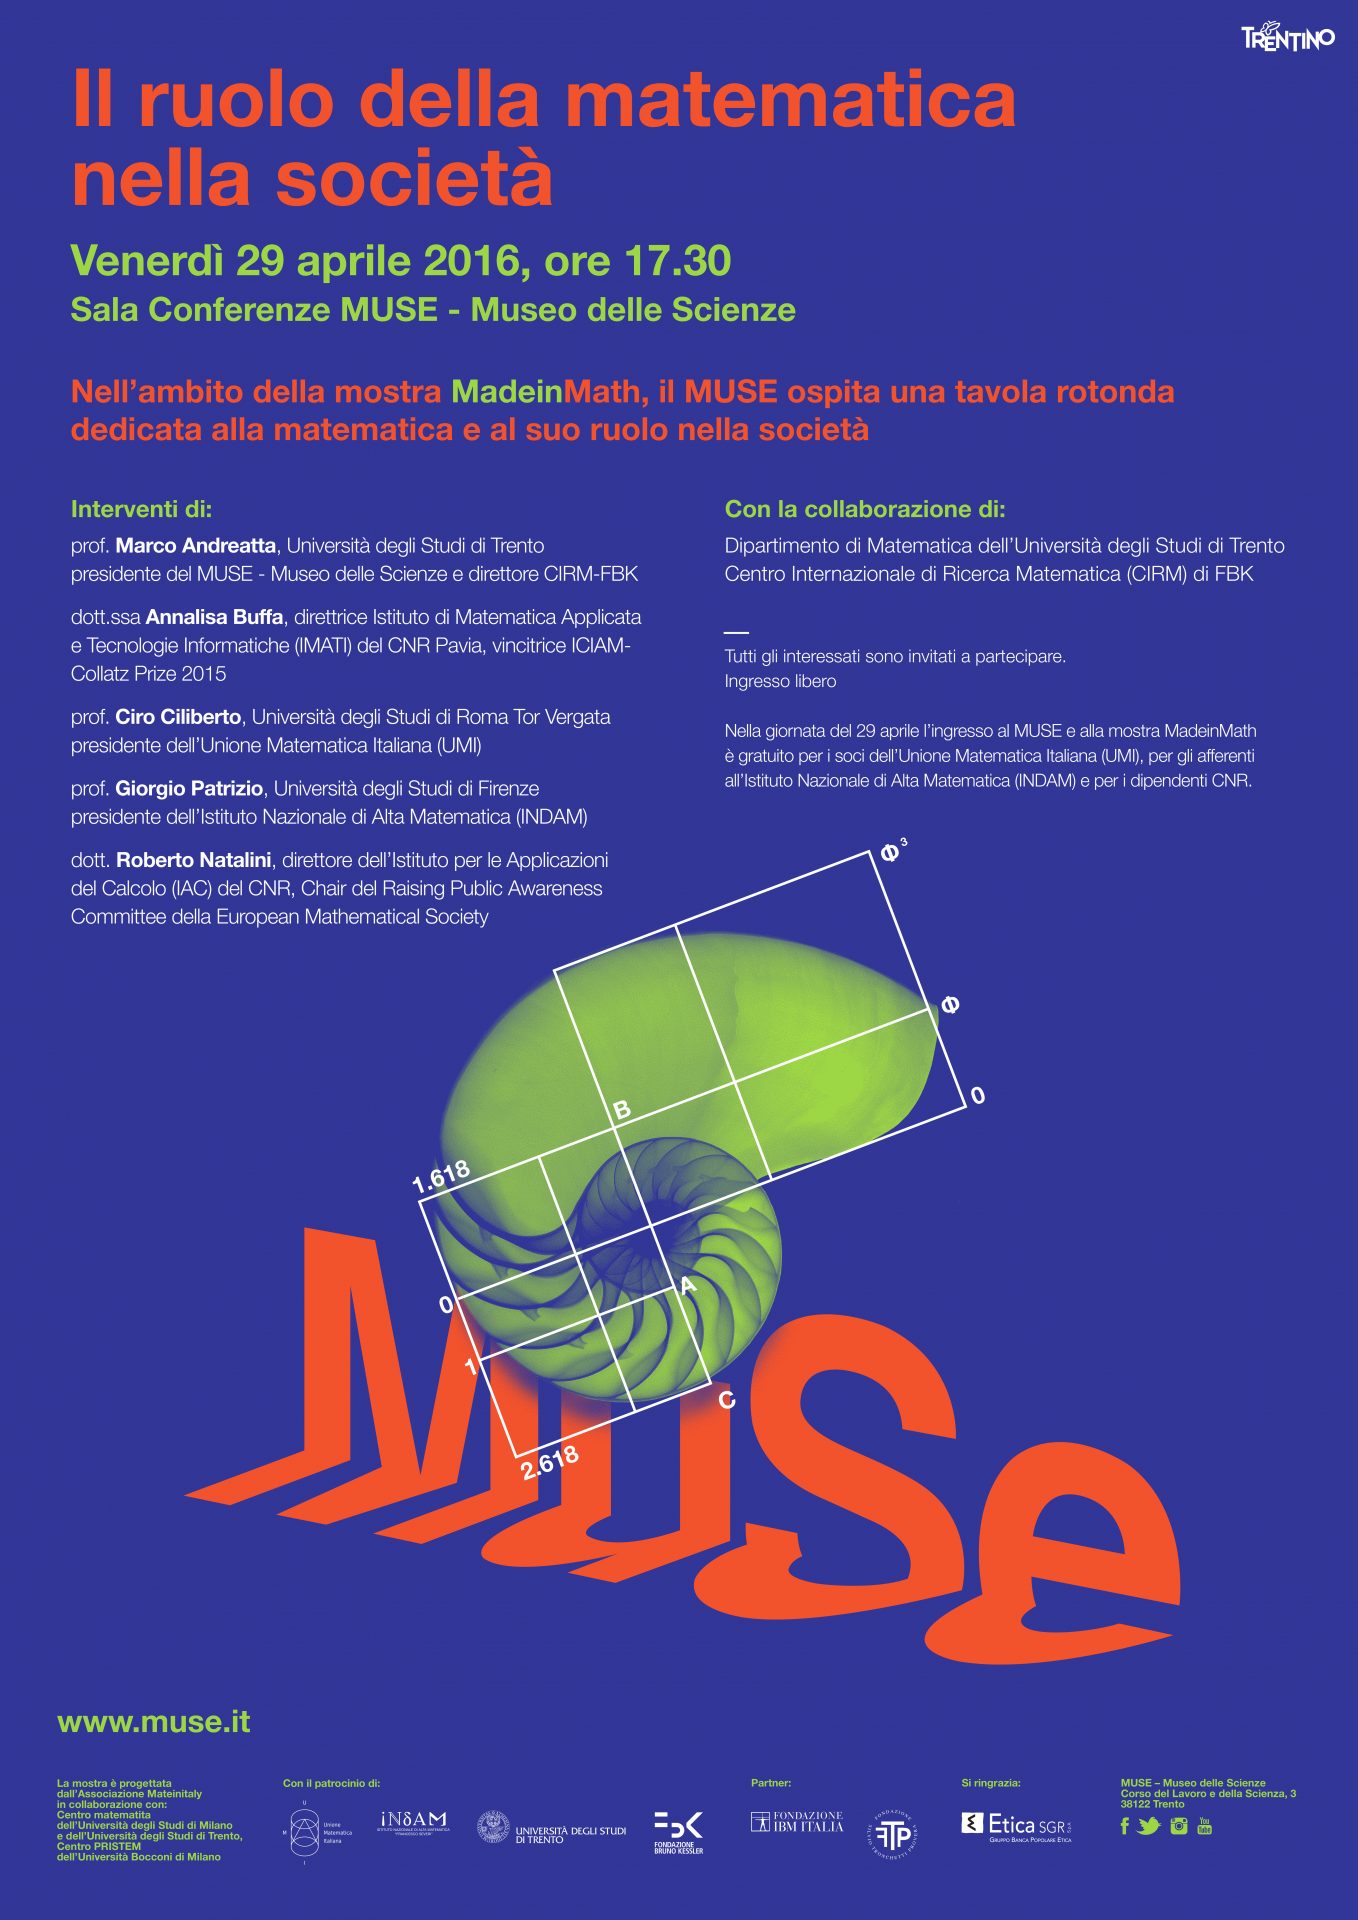 Il ruolo della matematica nella società, Venerdì 29 aprile 2016, ore 17.30 Sala Conferenze MUSE – Museo delle Scienze di Trento